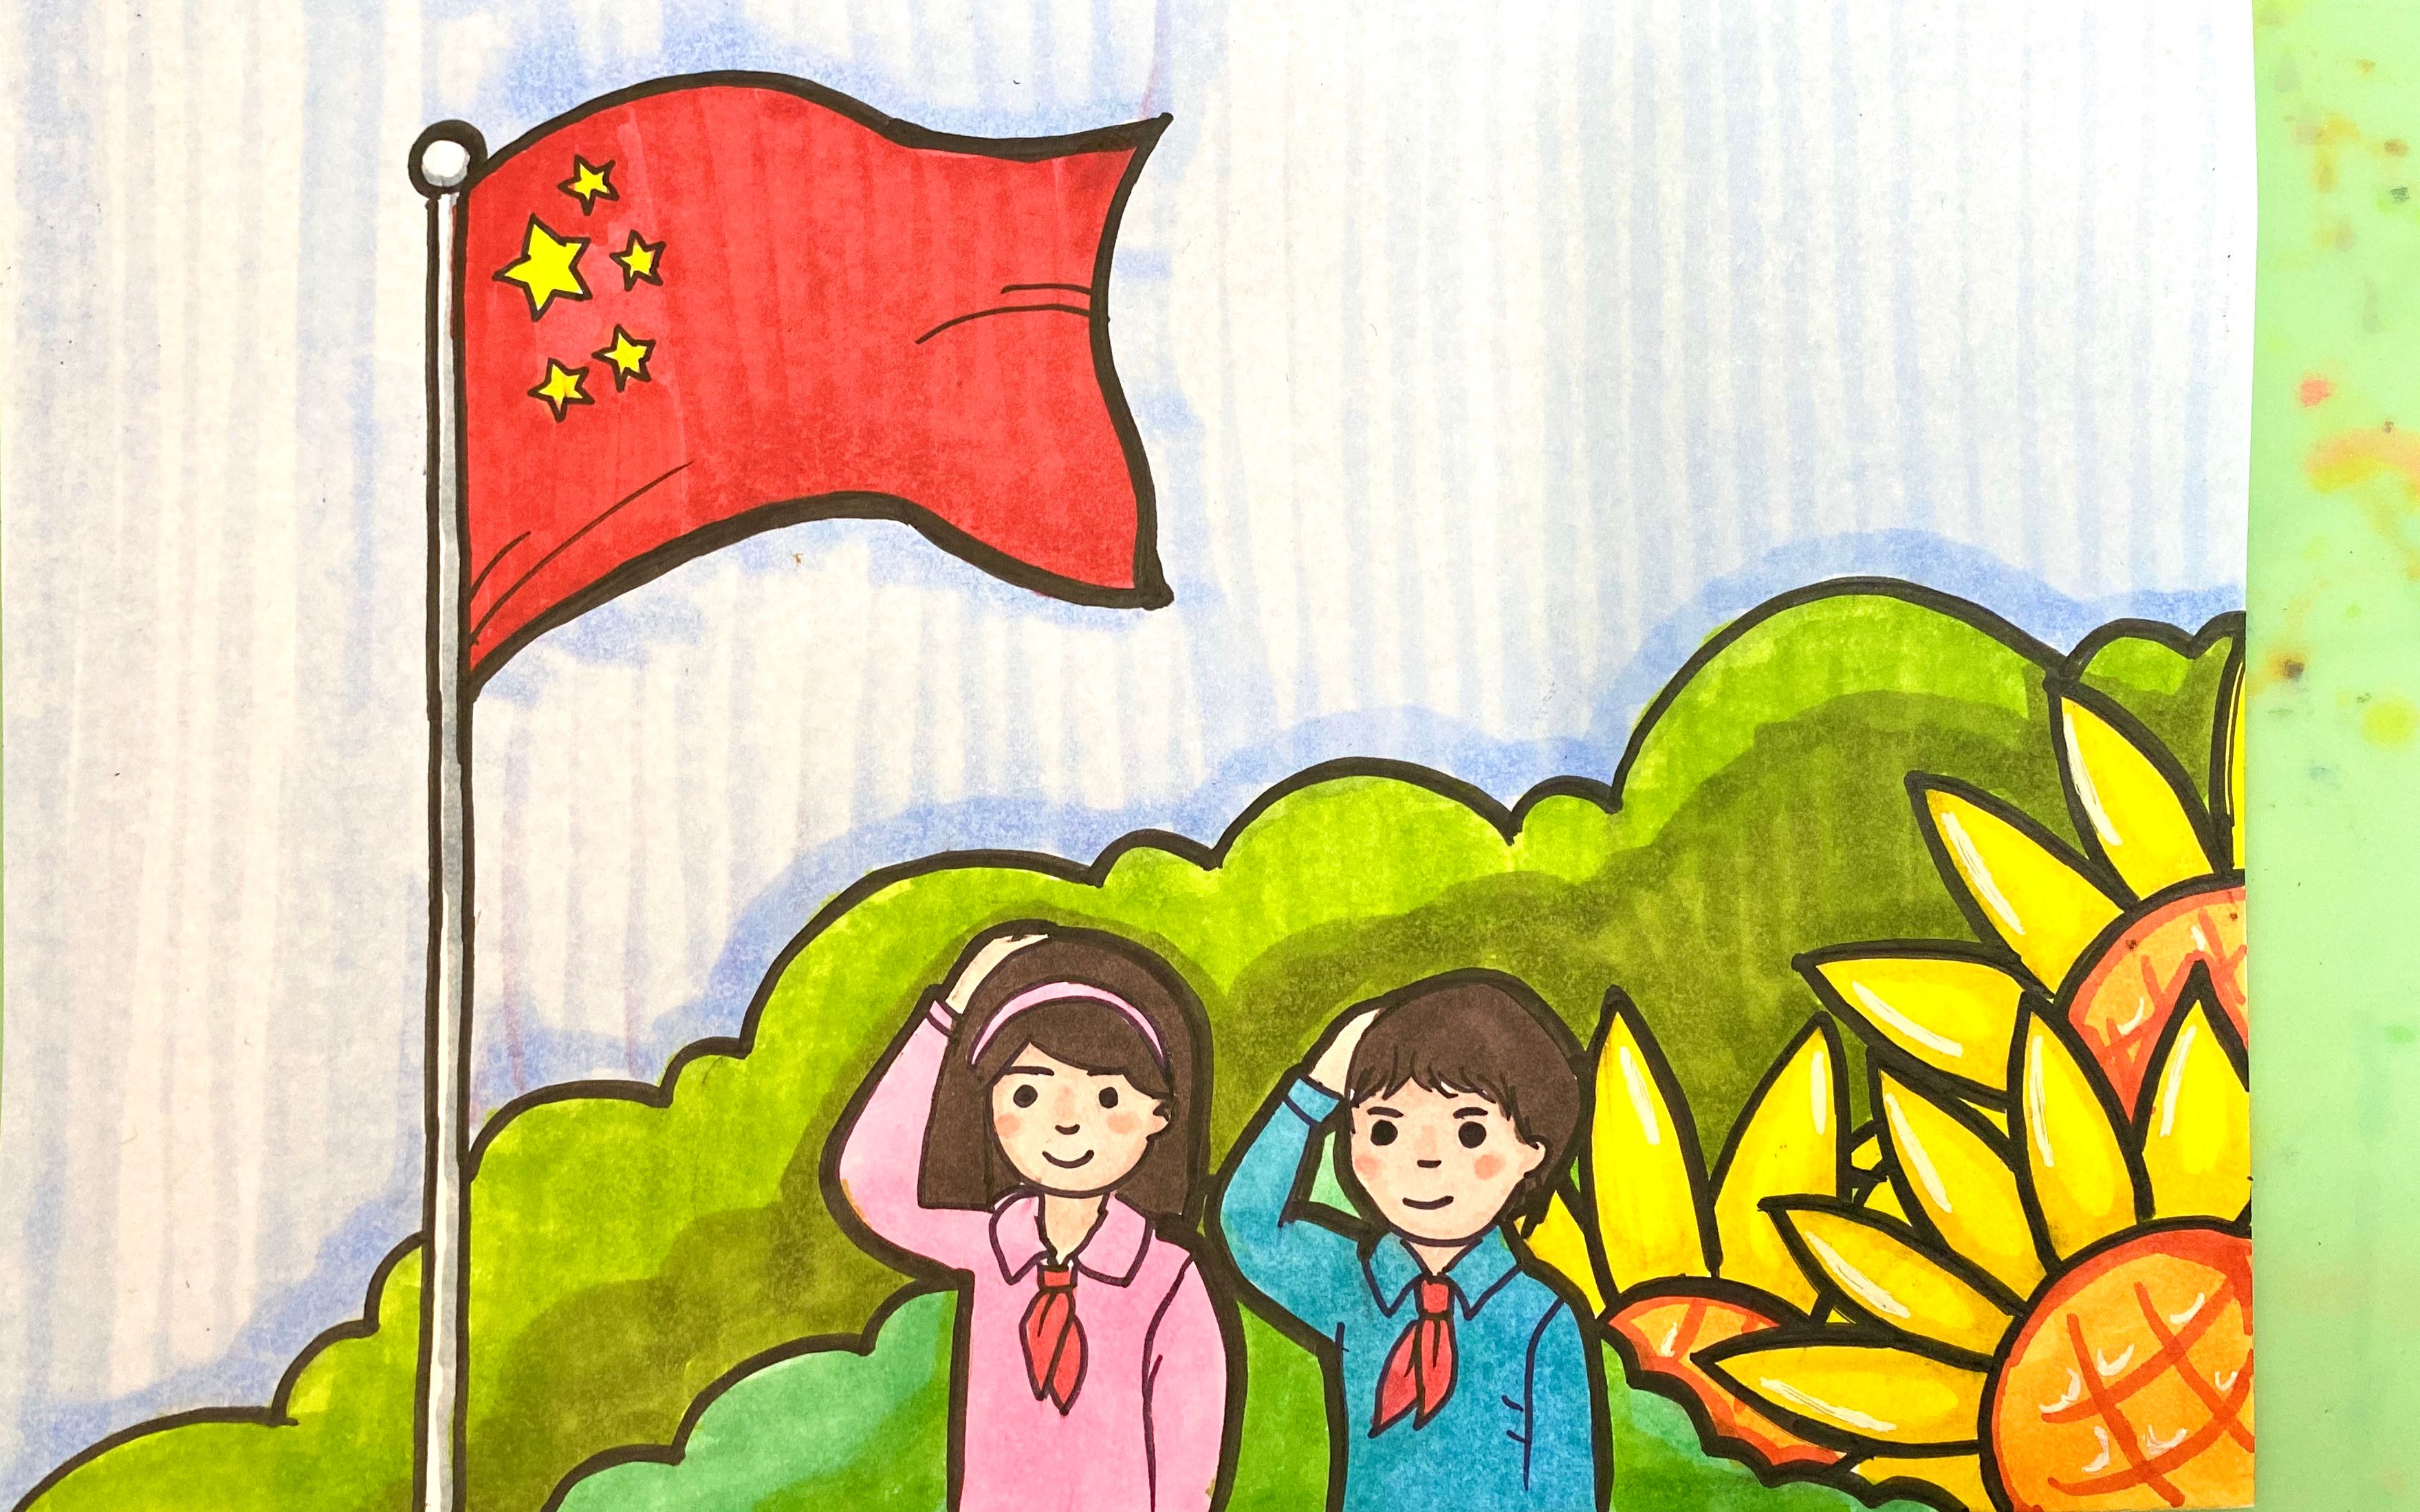 国庆节主题画:祖国未来的花朵向国旗敬礼,为祖国母亲庆生